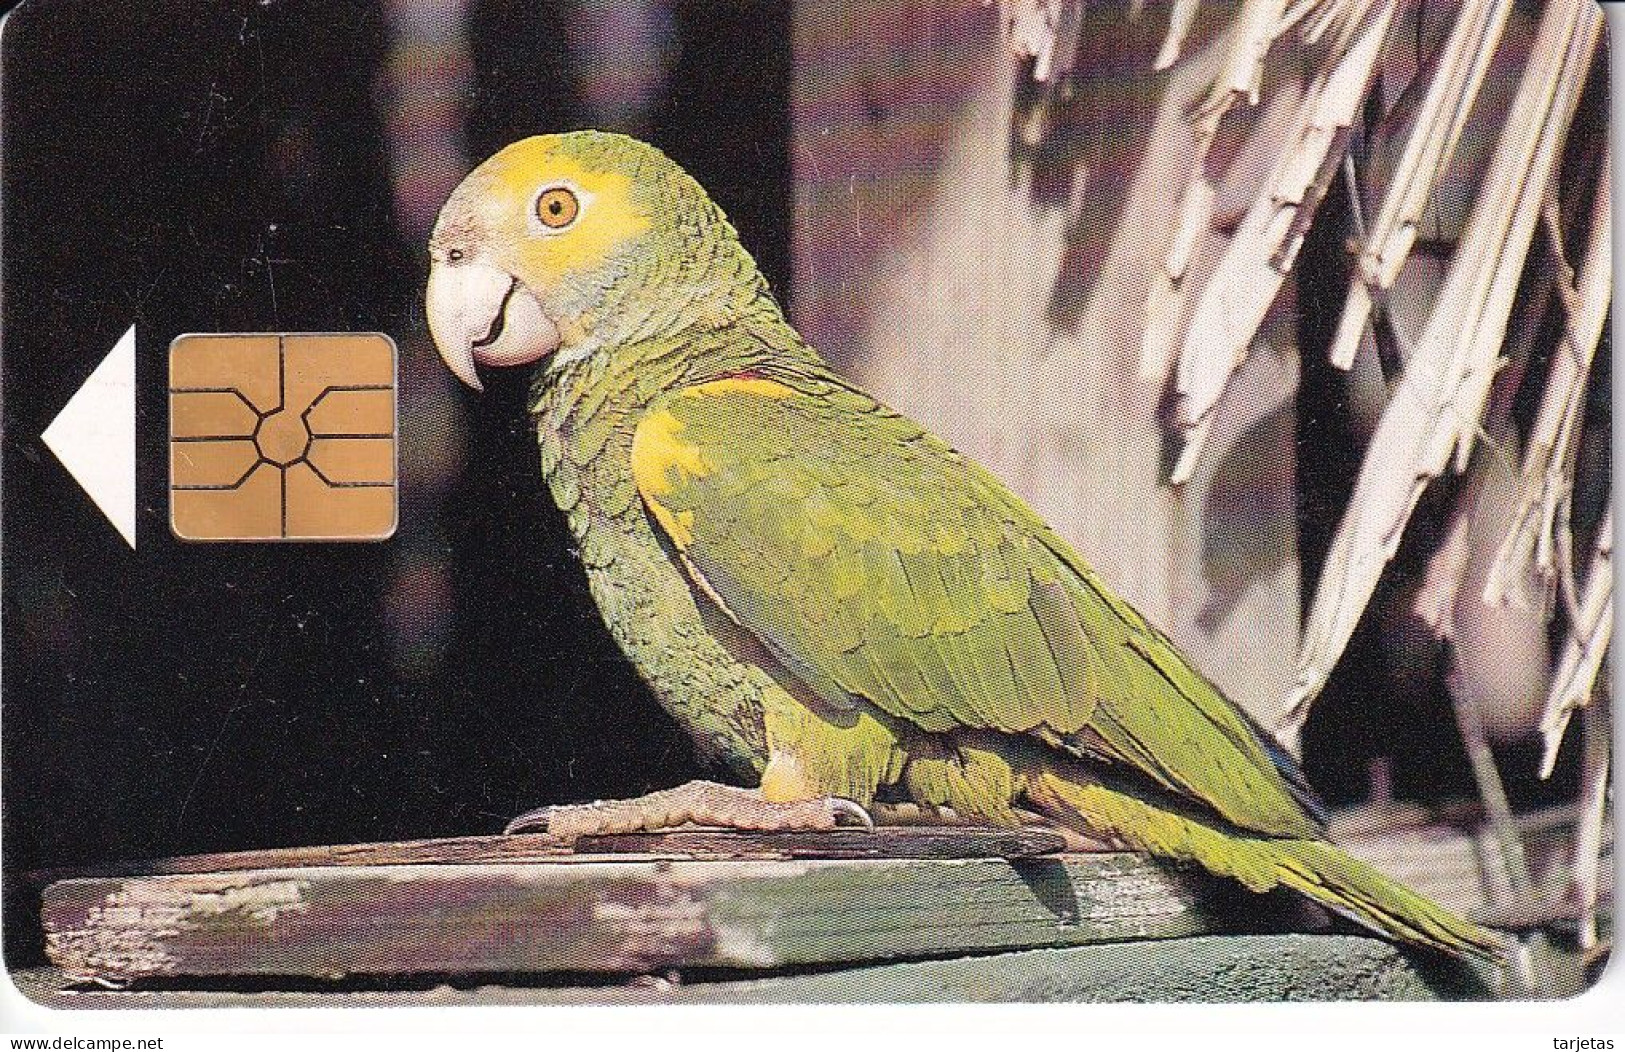 TARJETA DE BONAIRE DE UN LORO (BIRD-PAJARO) PARROT - Antillas (Nerlandesas)